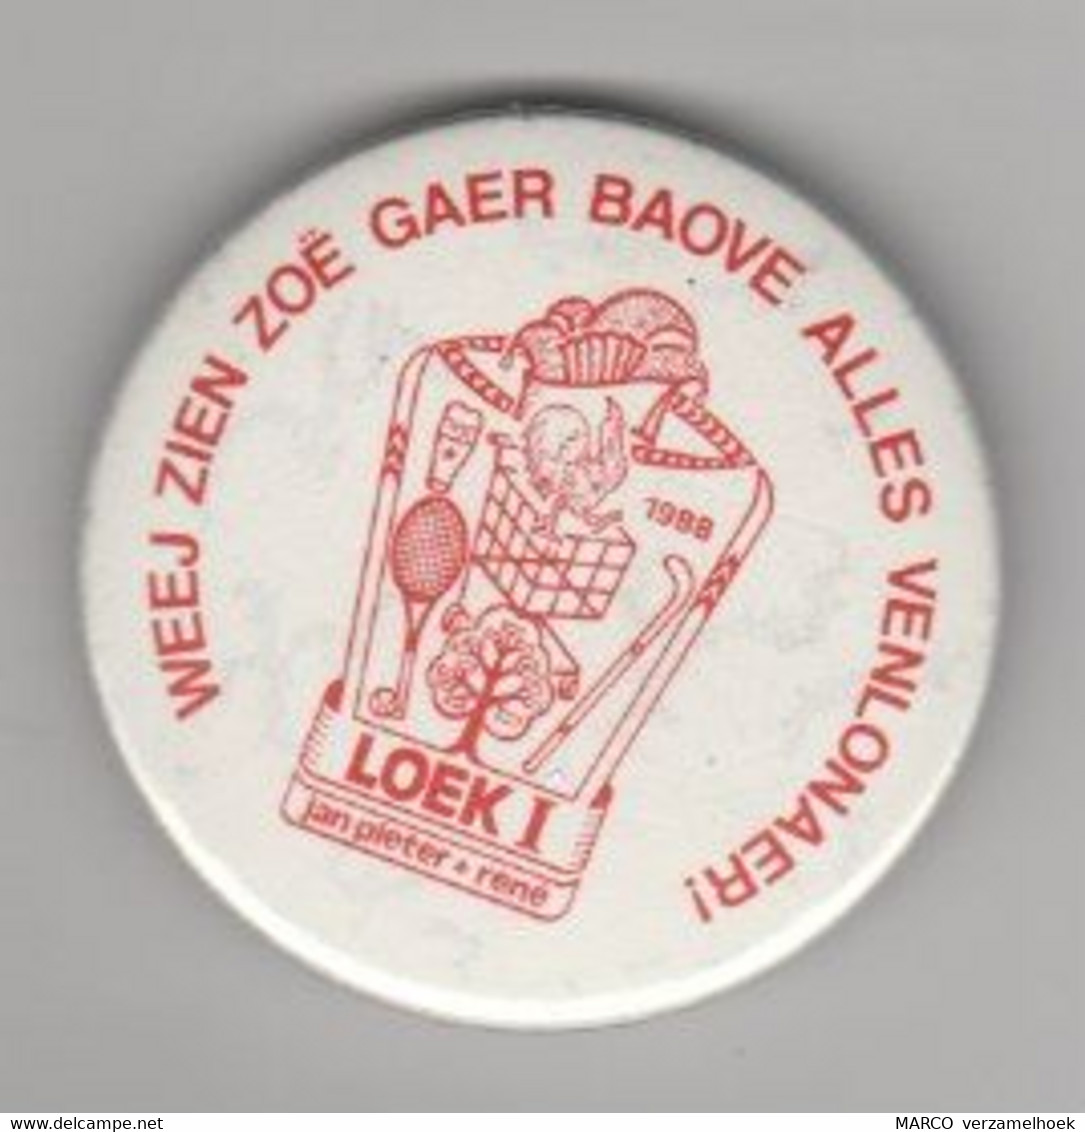 Pin-speld-button Weej Zien Zoë Gaer Baove Alles Venlonaer! Carnaval Venlo 1988 Hockey-tennis Loek1 - Fasching & Karneval